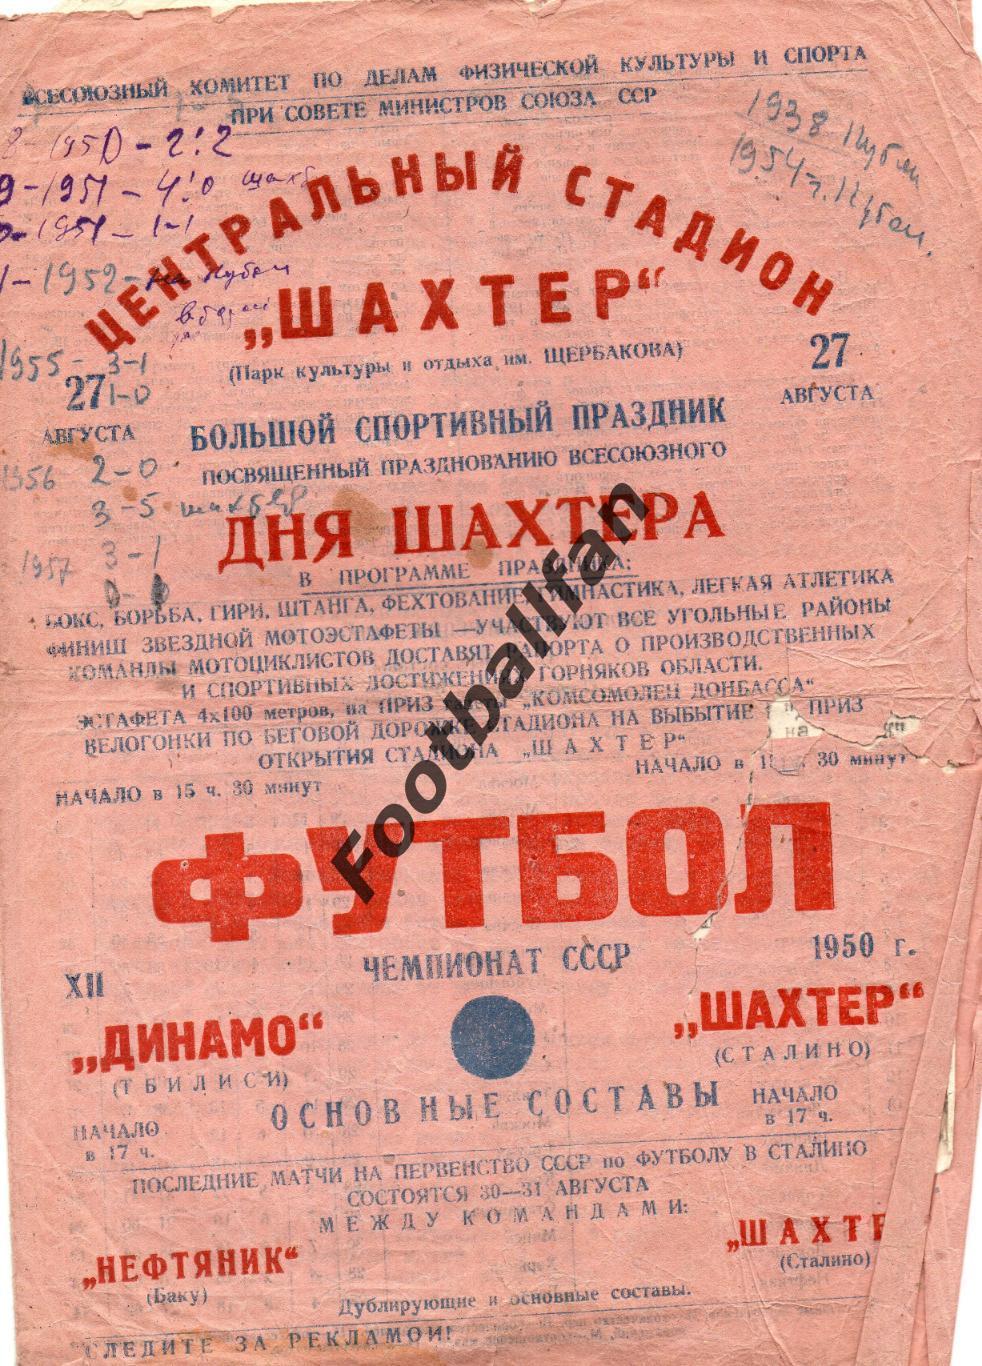 Шахтер Сталино ( Донецк ) - Динамо Тбилиси 27.08.1950